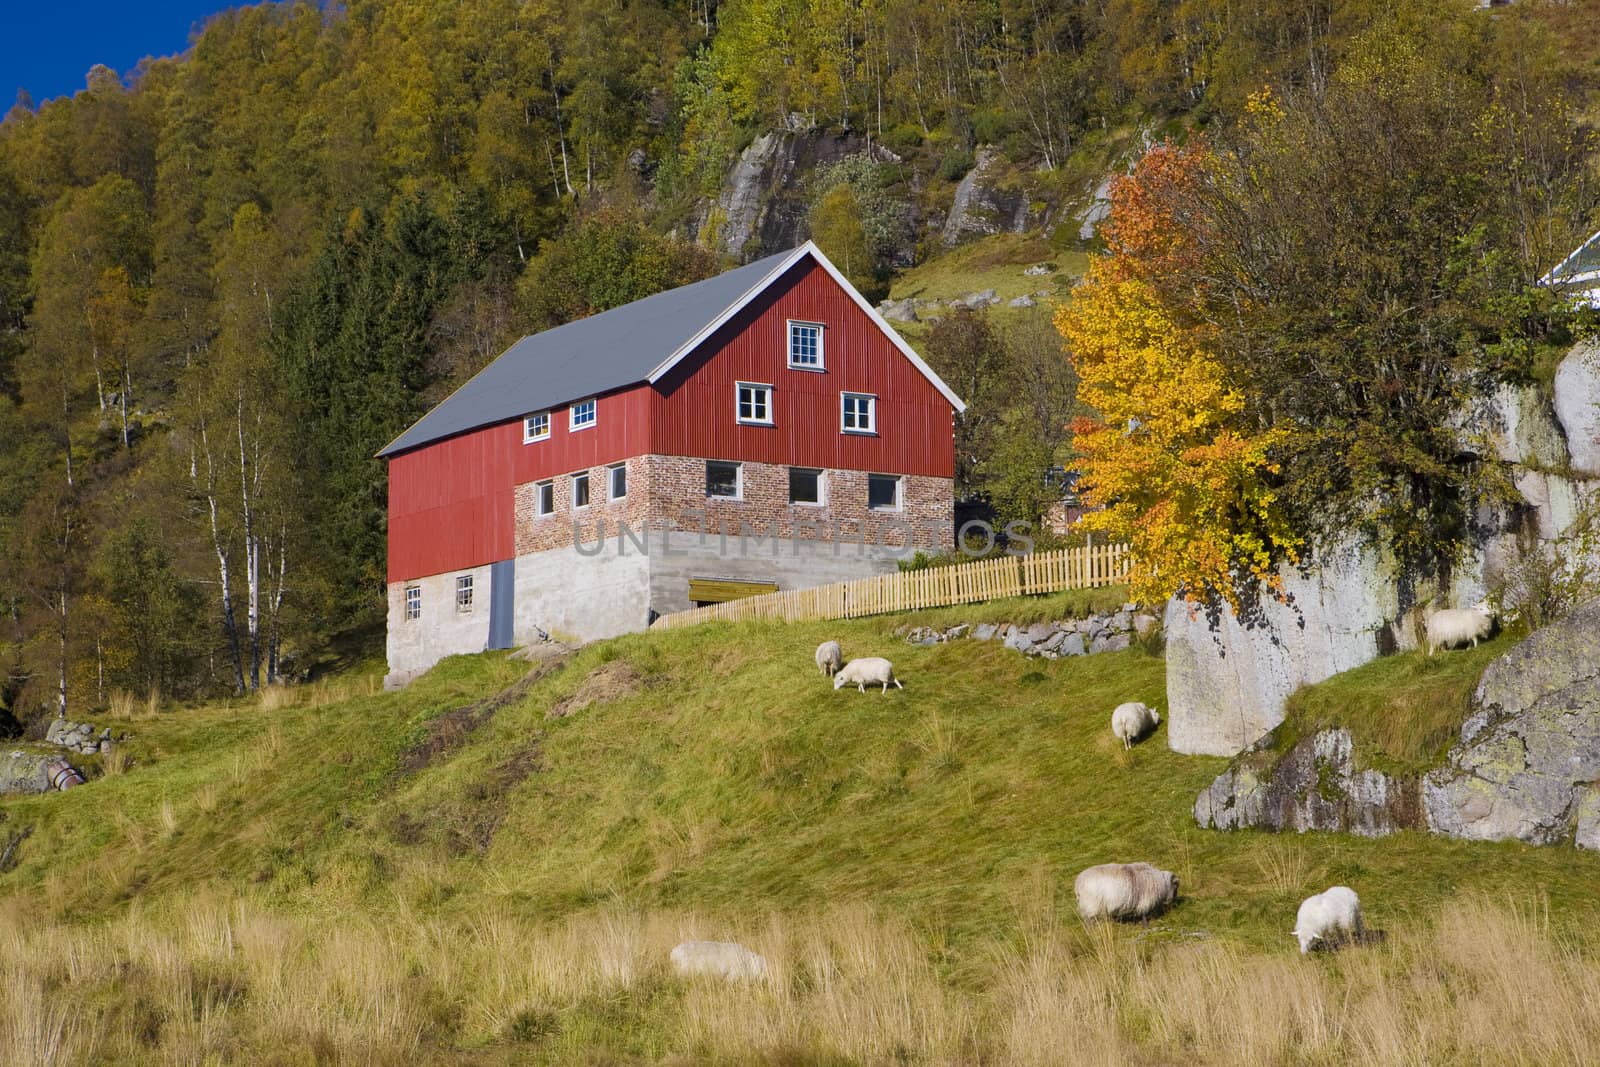 Kvaevemoen, Norway by phbcz